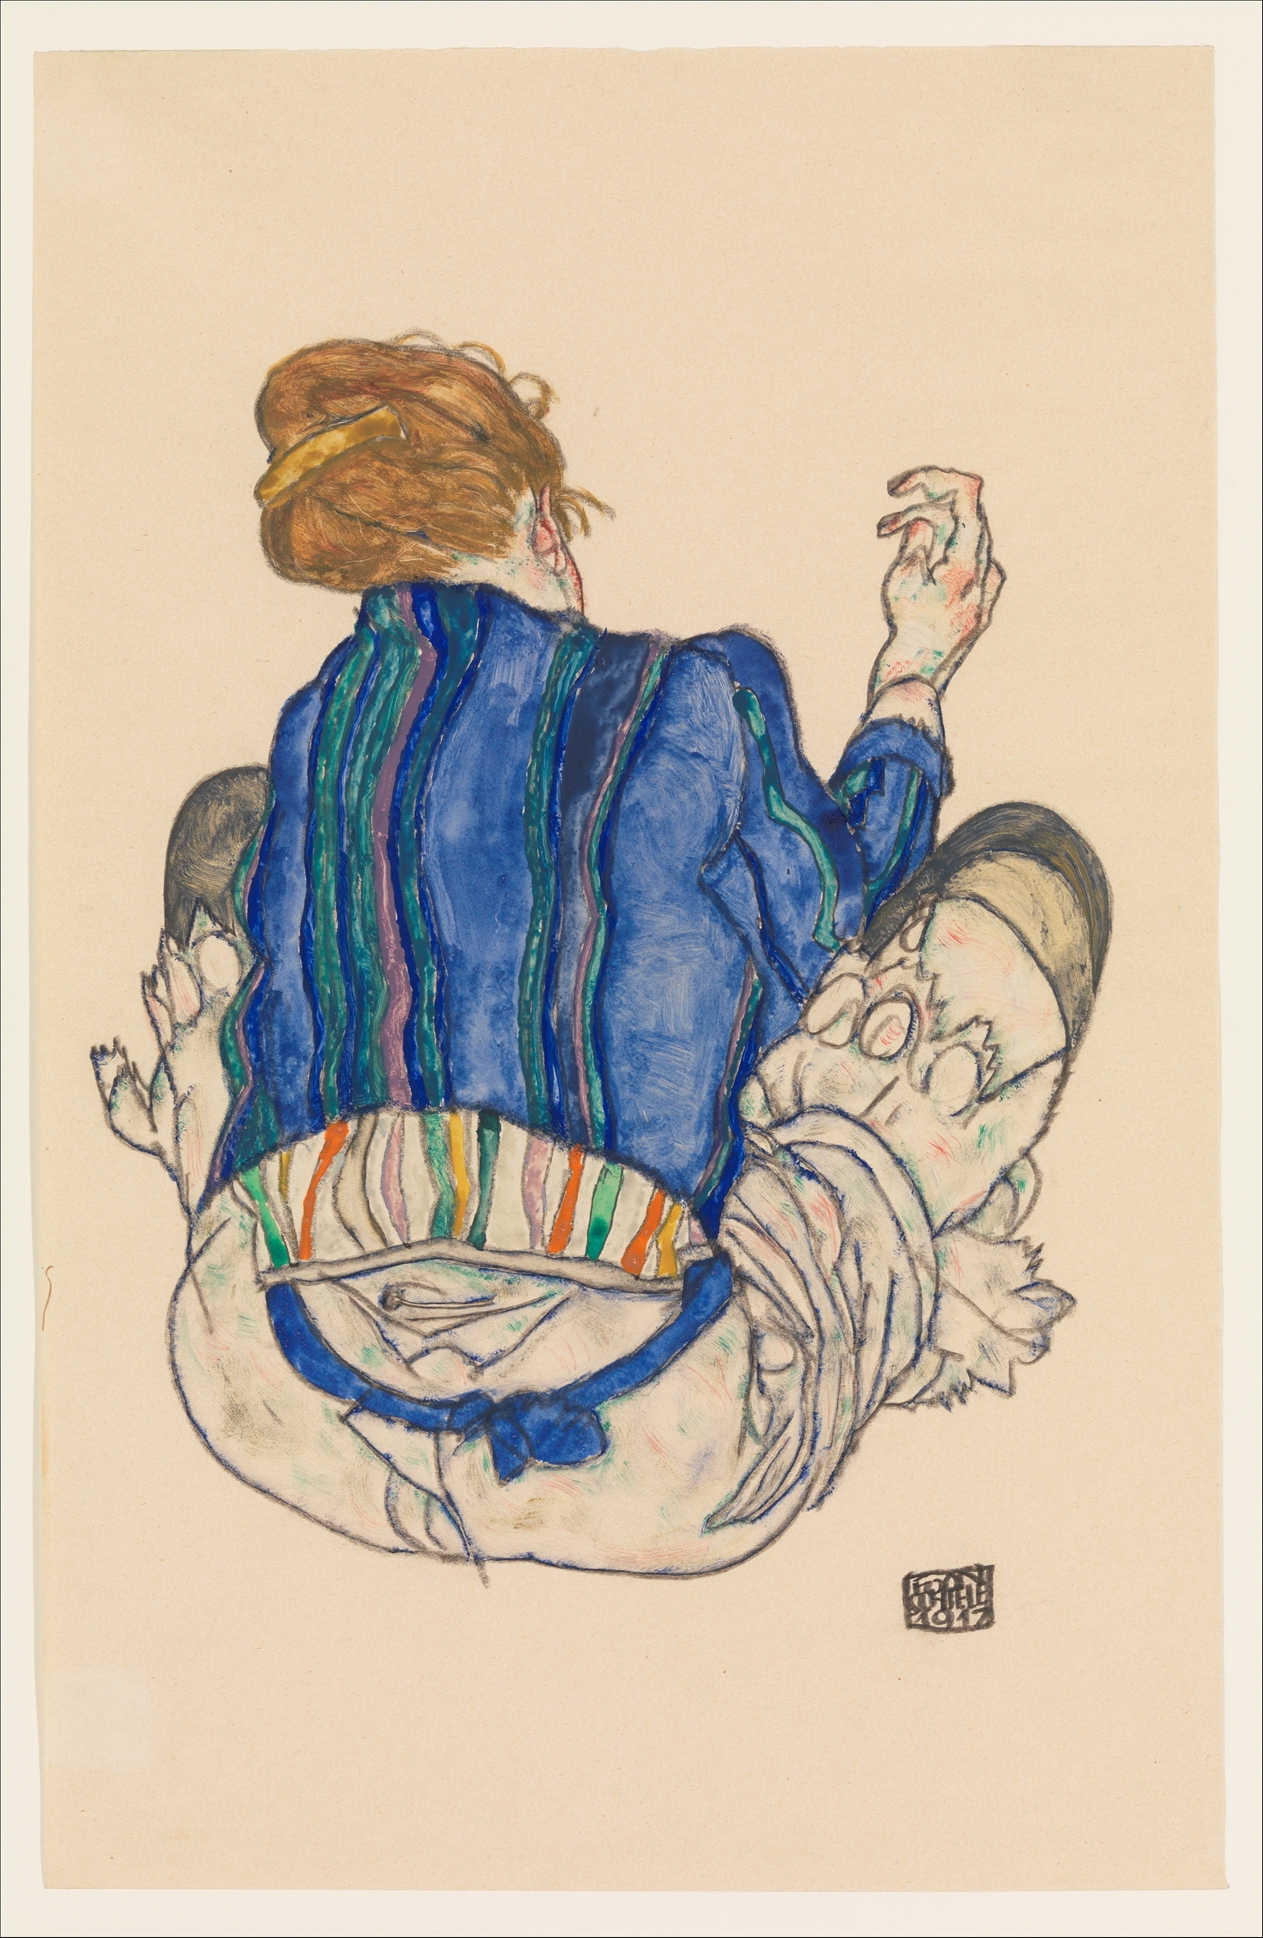 Siedząca kobieta, widok z tyłu by Egon Schiele - 1917 - 46.4 x 29.8 cm 